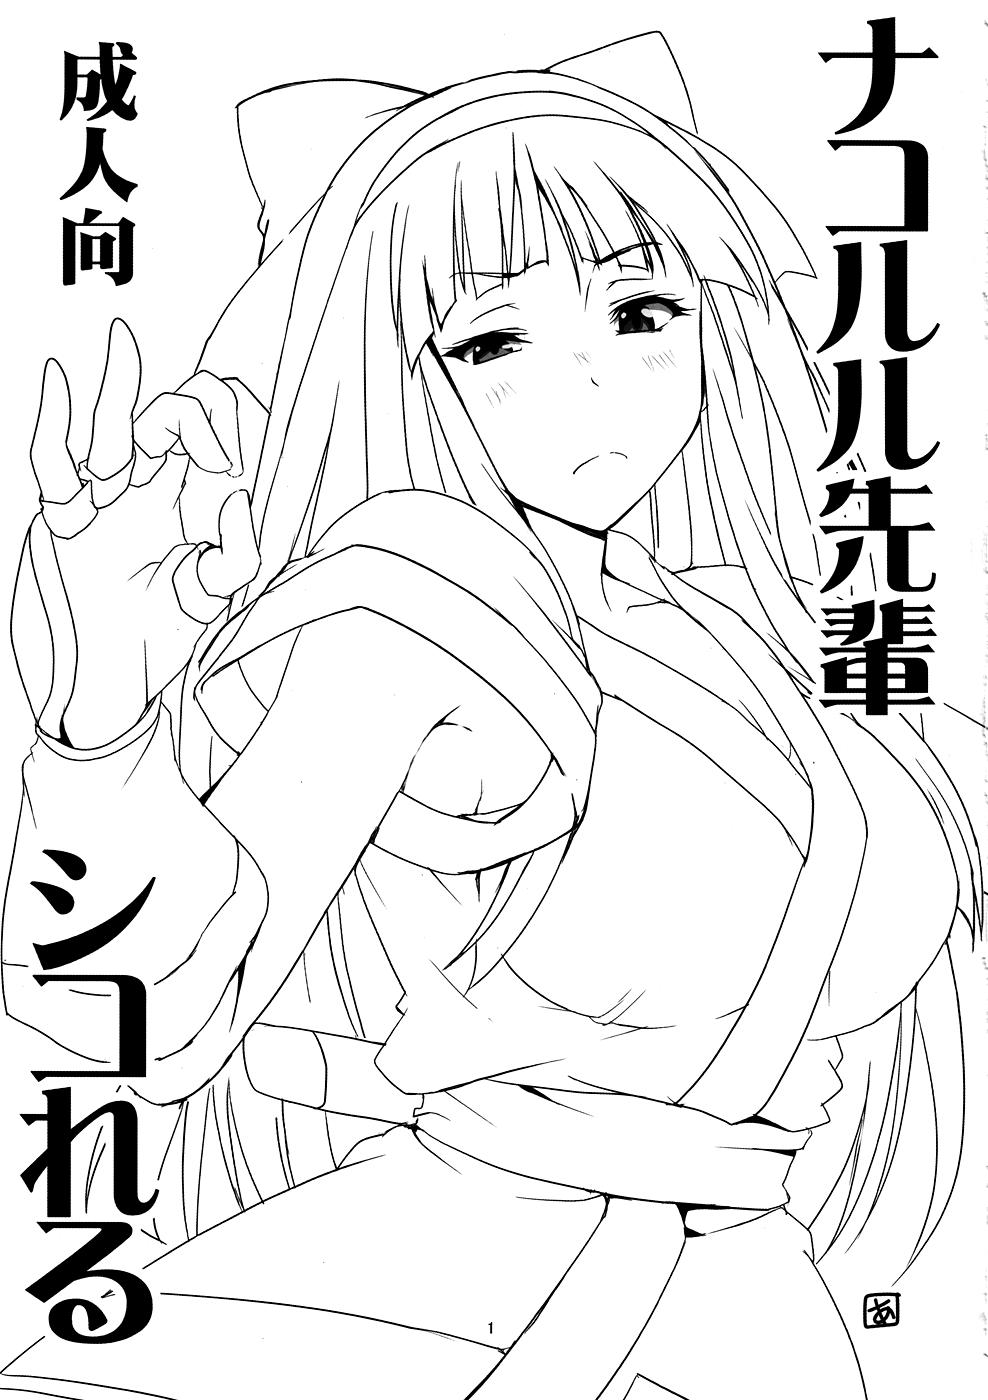 Teenage Nakoruru Senpai Shikoreru - Samurai spirits Hyouka Compilation - Page 2